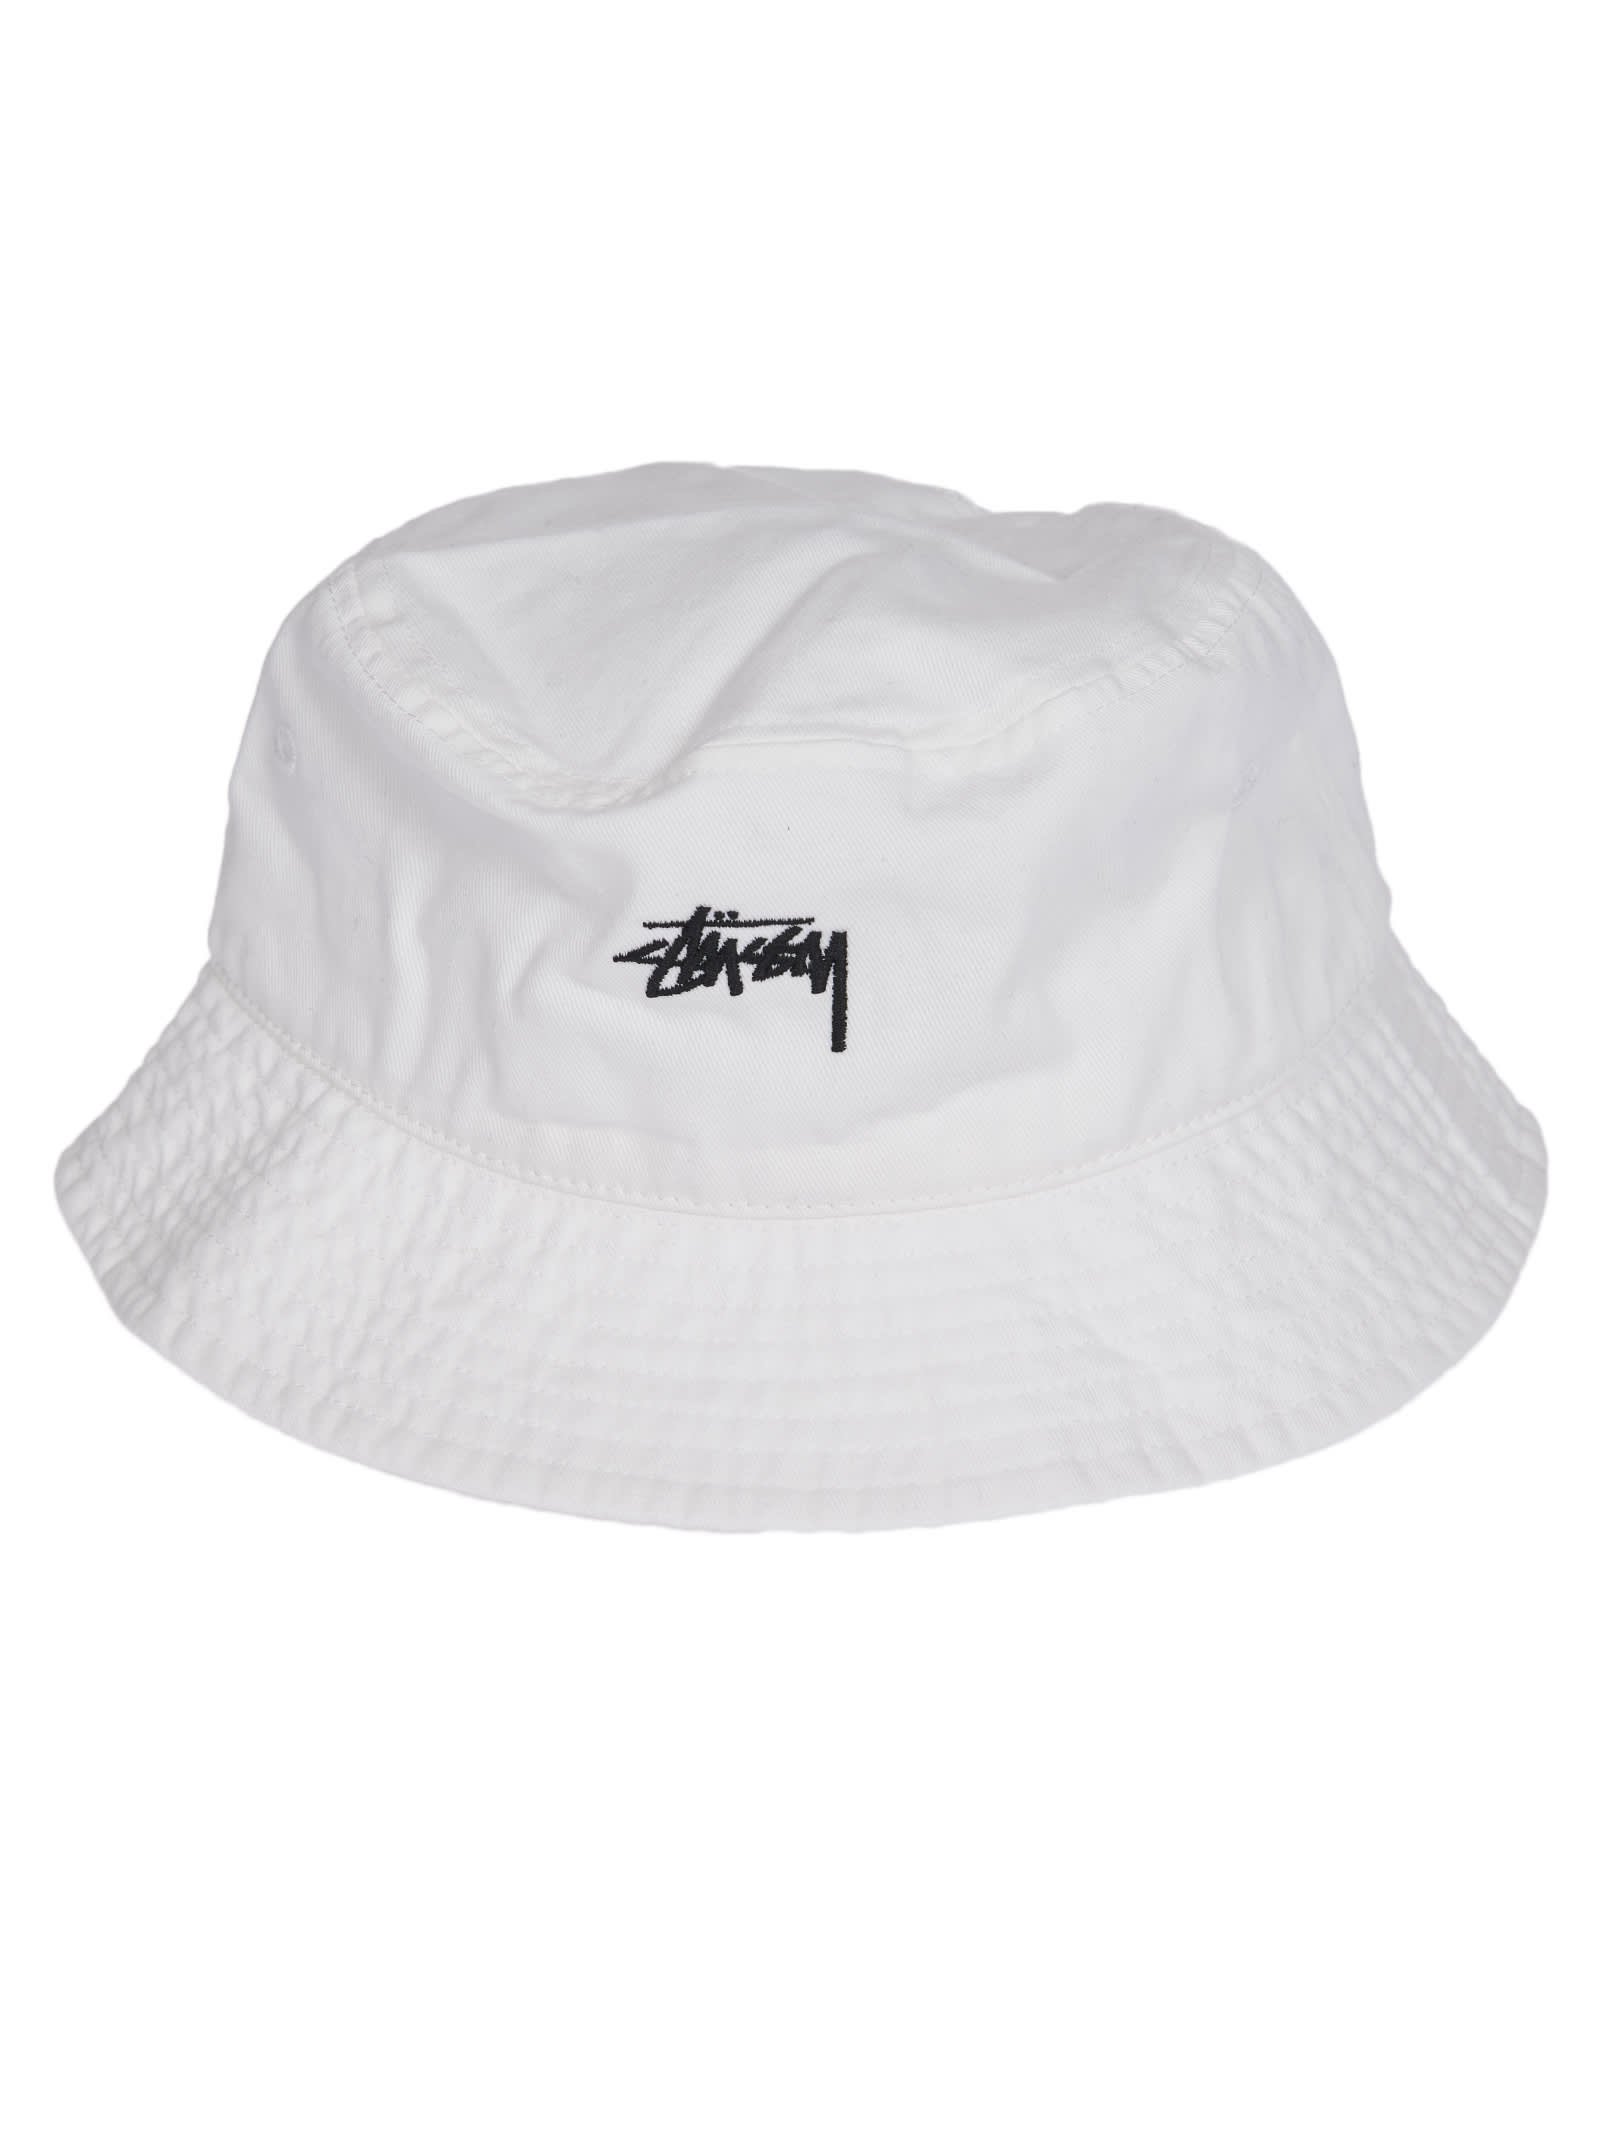 Stussy White Bucket Hat